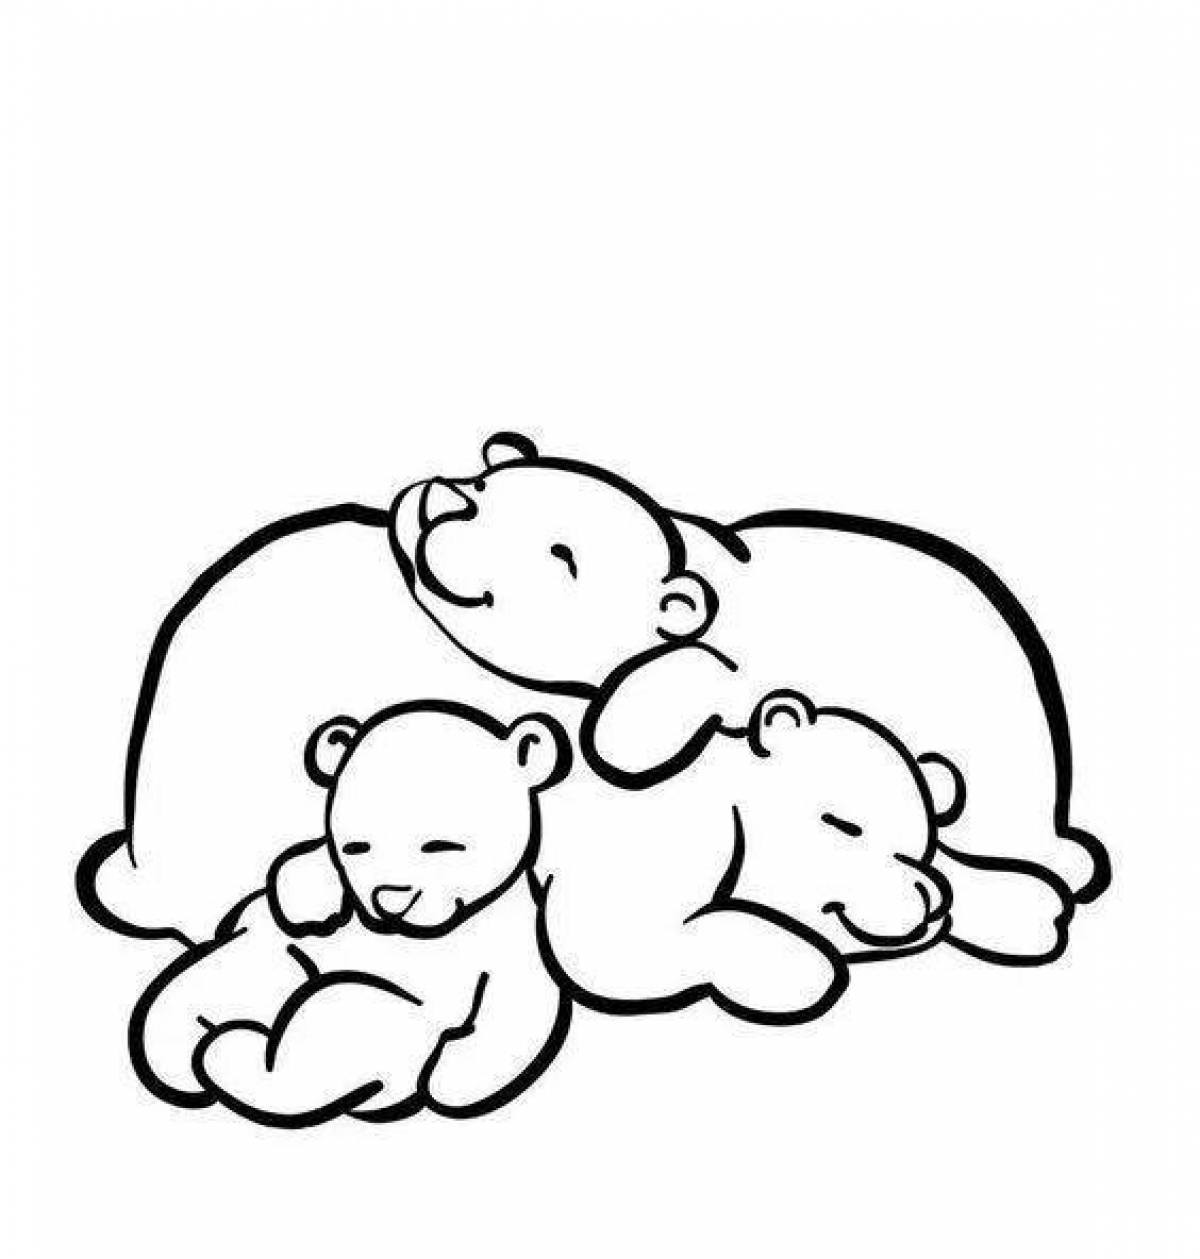 Утешительная раскраска спящий медведь